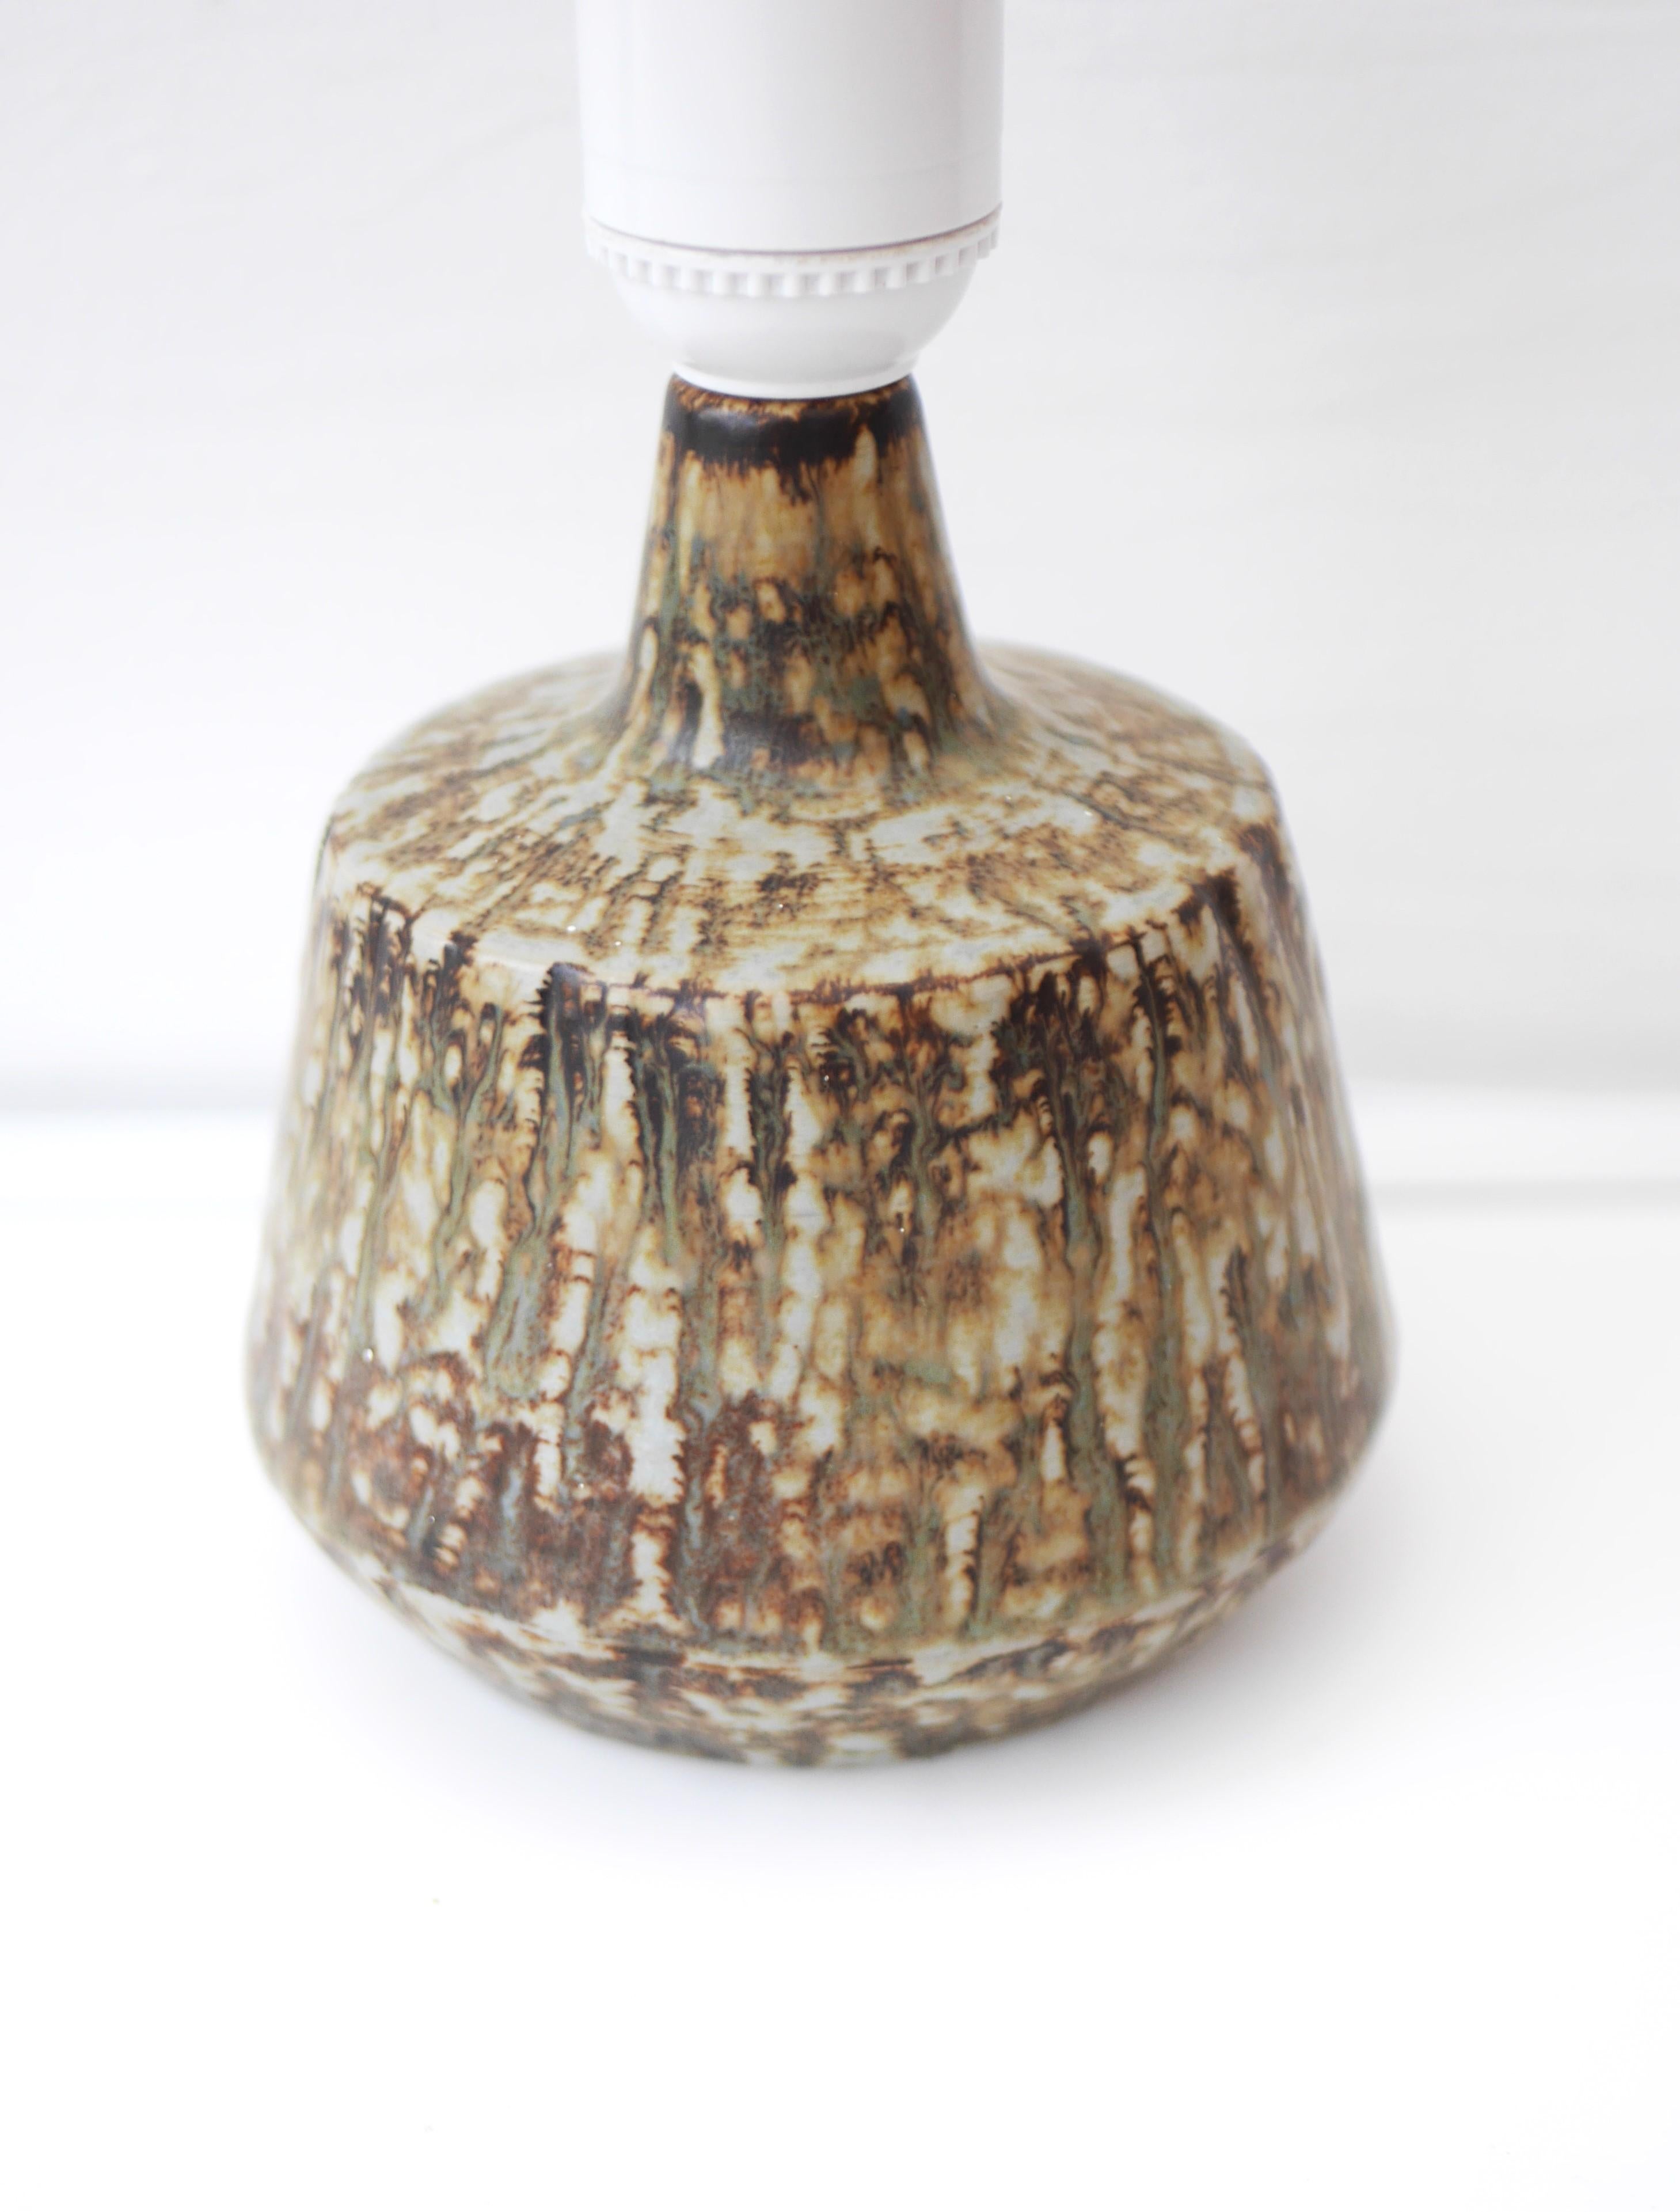 Une fantastique et rare base de lampe de table vintage en céramique connue sous le nom de 